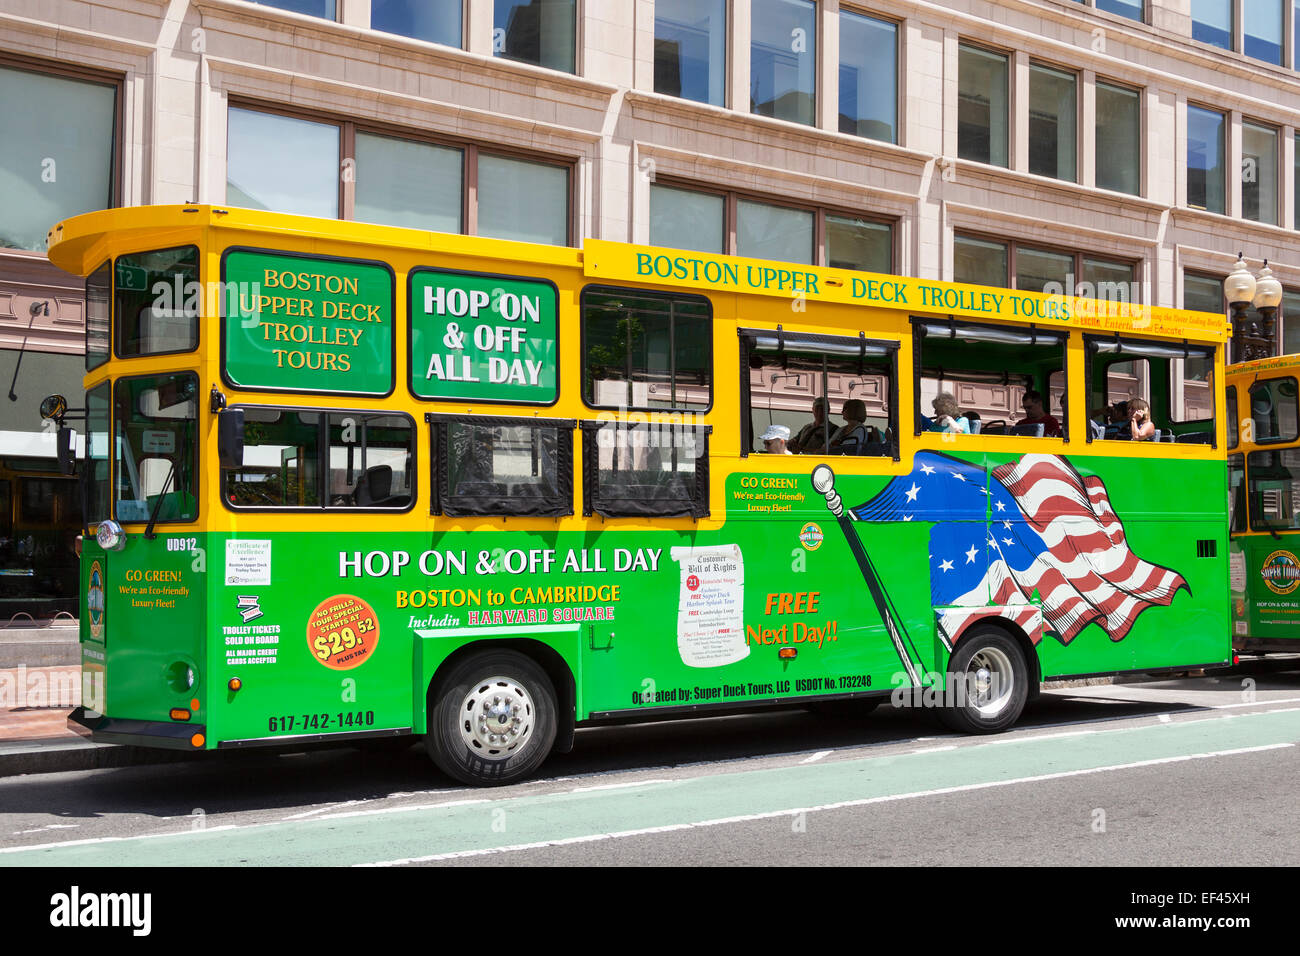 Boston city sightseeing bus, Boston, Massachusetts, USA Stock Photo